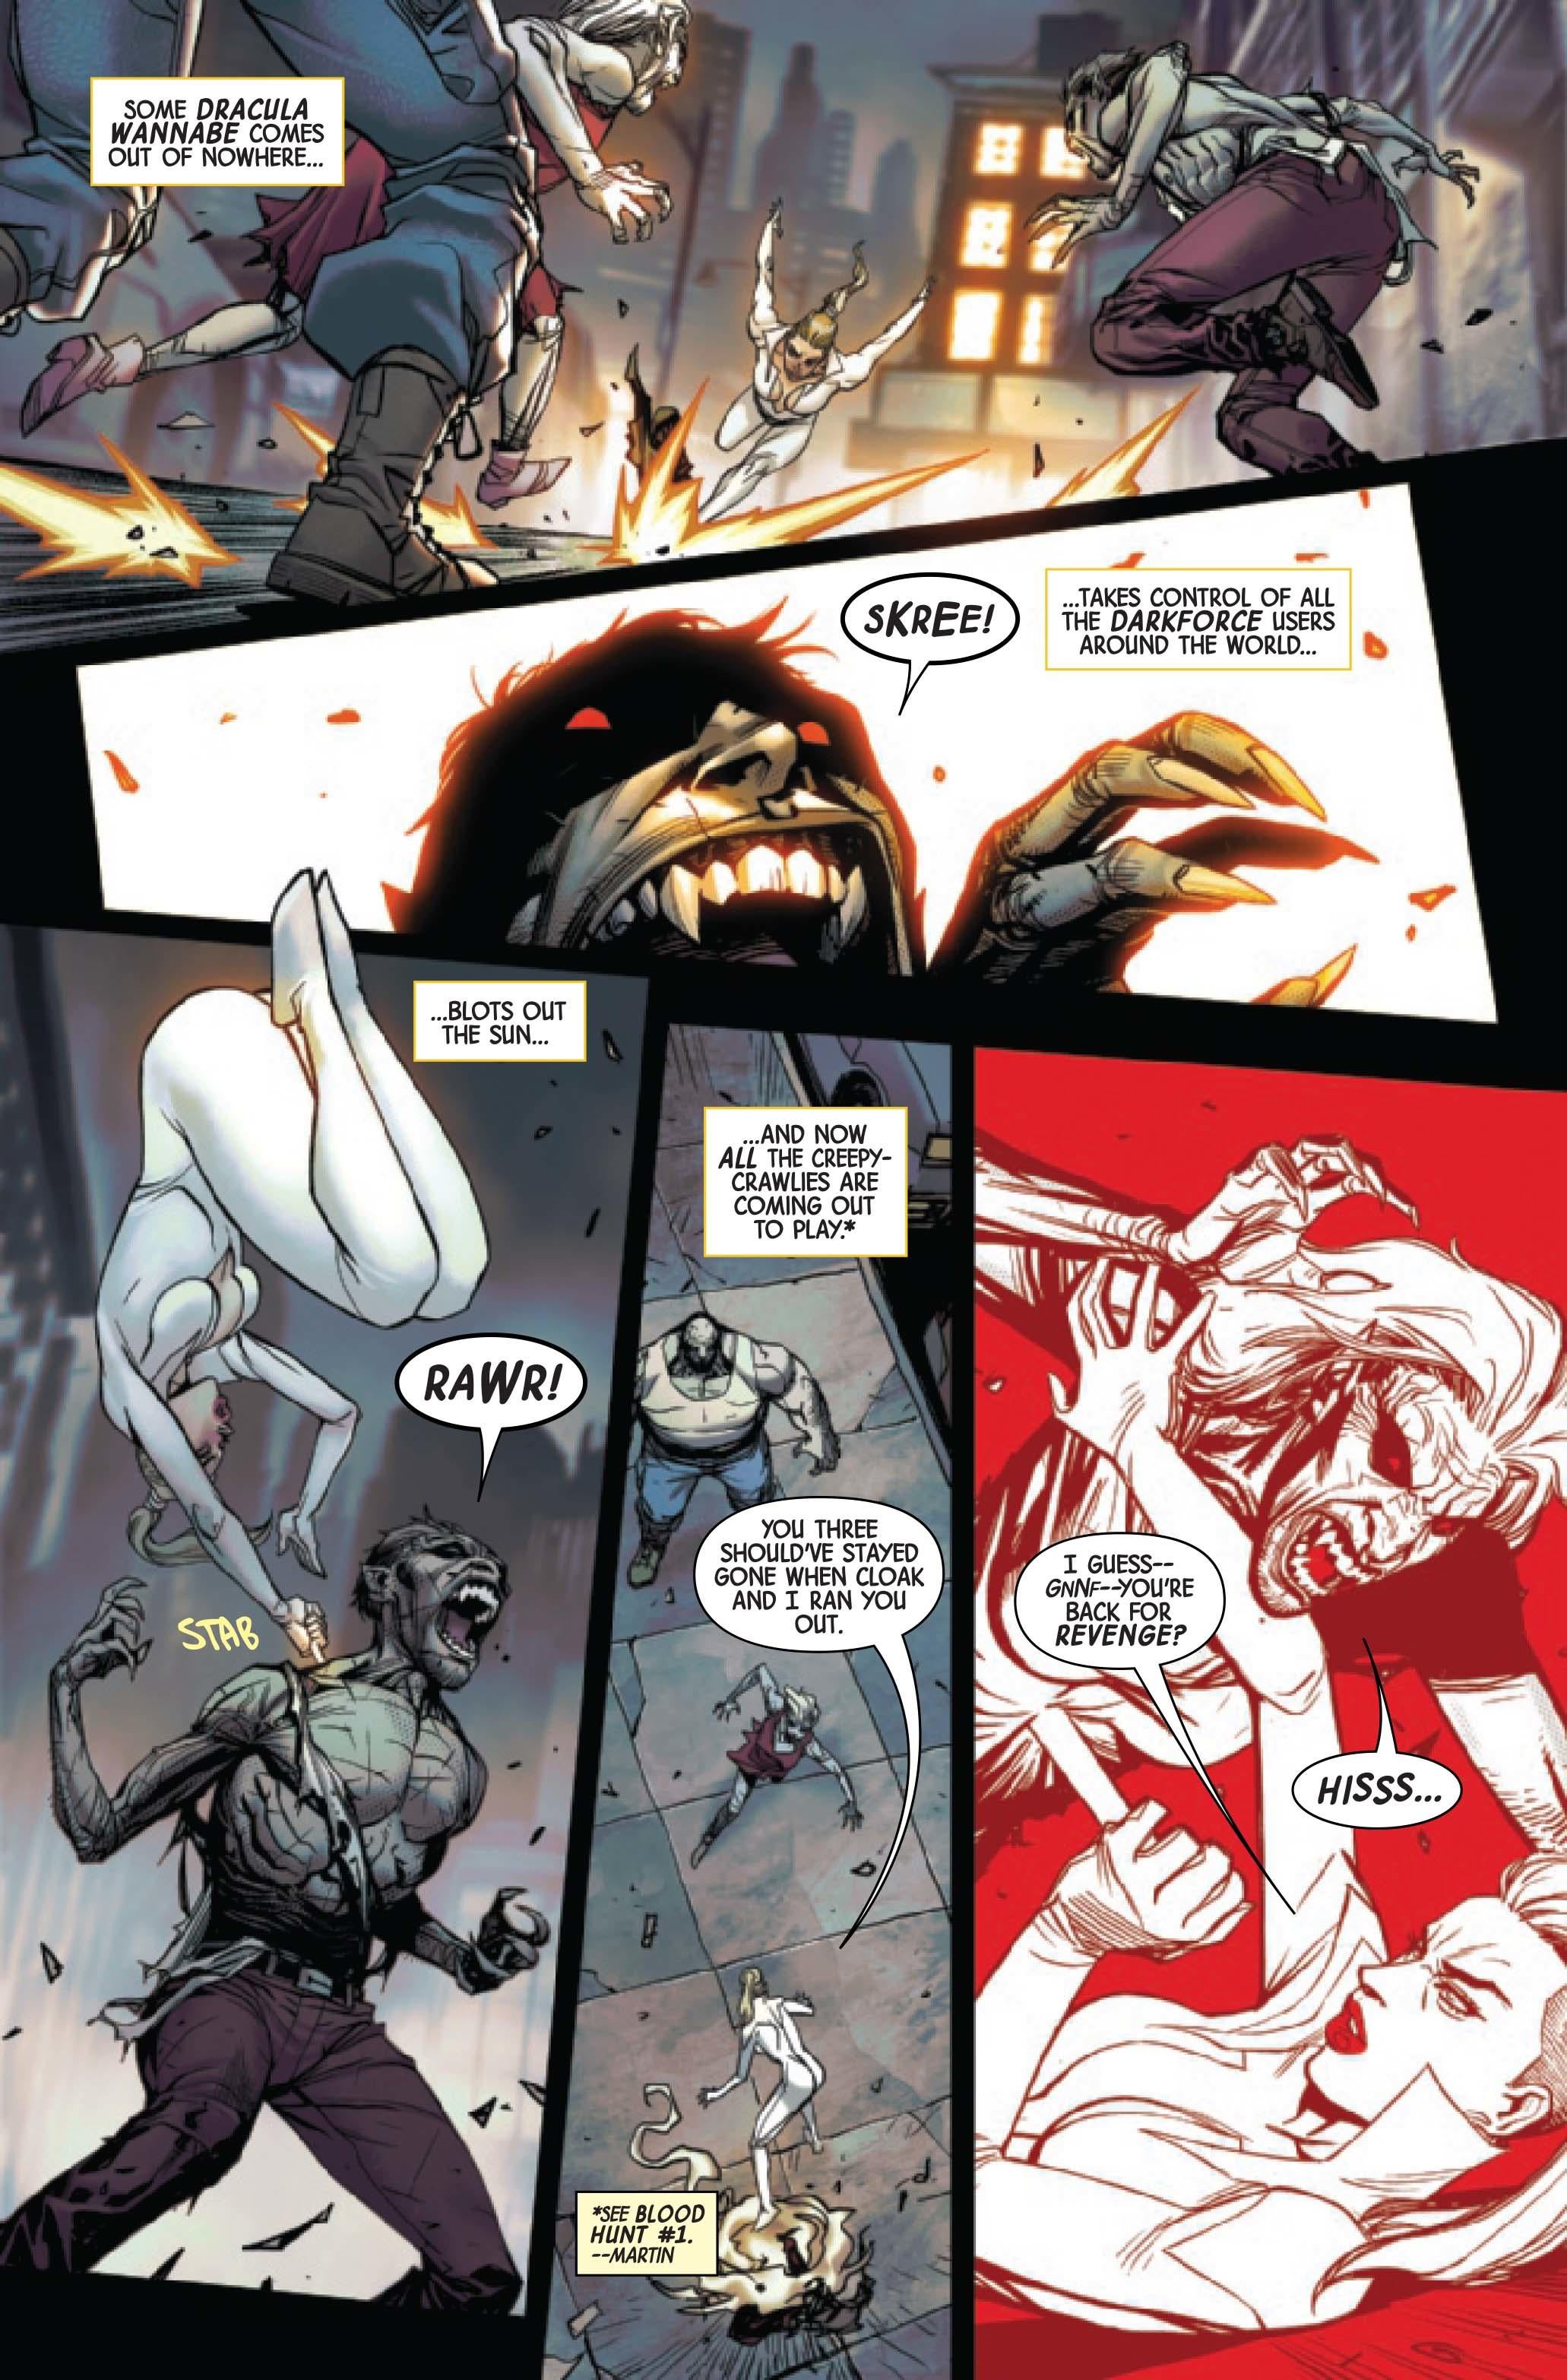 Marvel собирает новую команду истребителей вампиров в Blood Hunters #1 (эксклюзив)